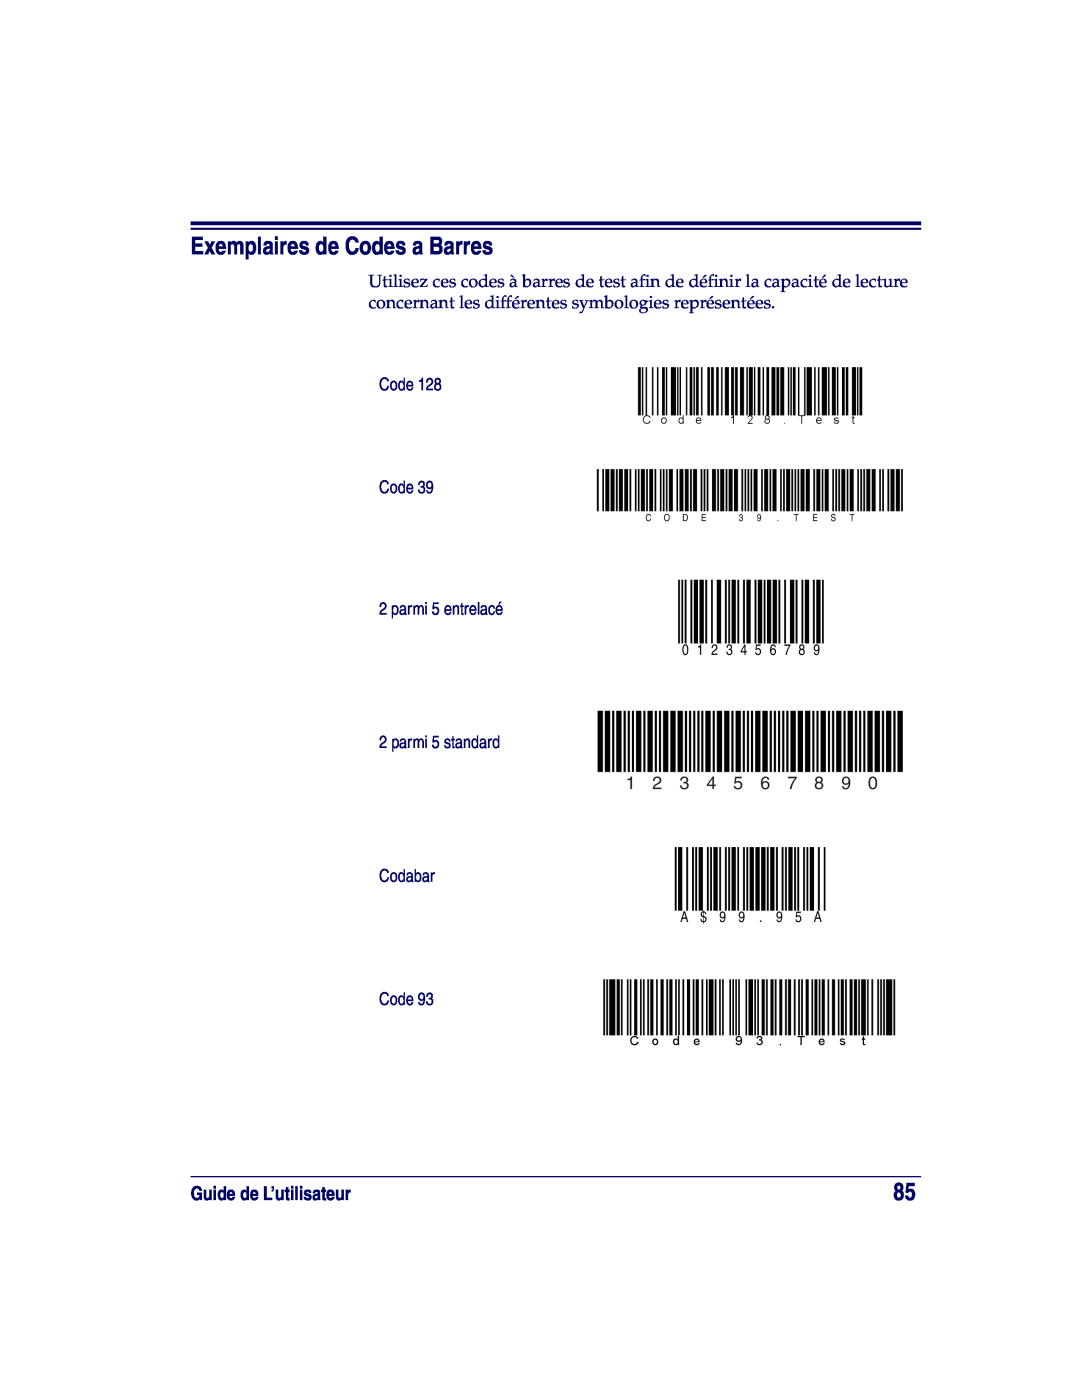 Datalogic Scanning XLR, SR Exemplaires de Codes a Barres, Guide de L’utilisateur, 0 1 2 3 4 5 6, A $ 9 9 . 9 5 A, C o d e 